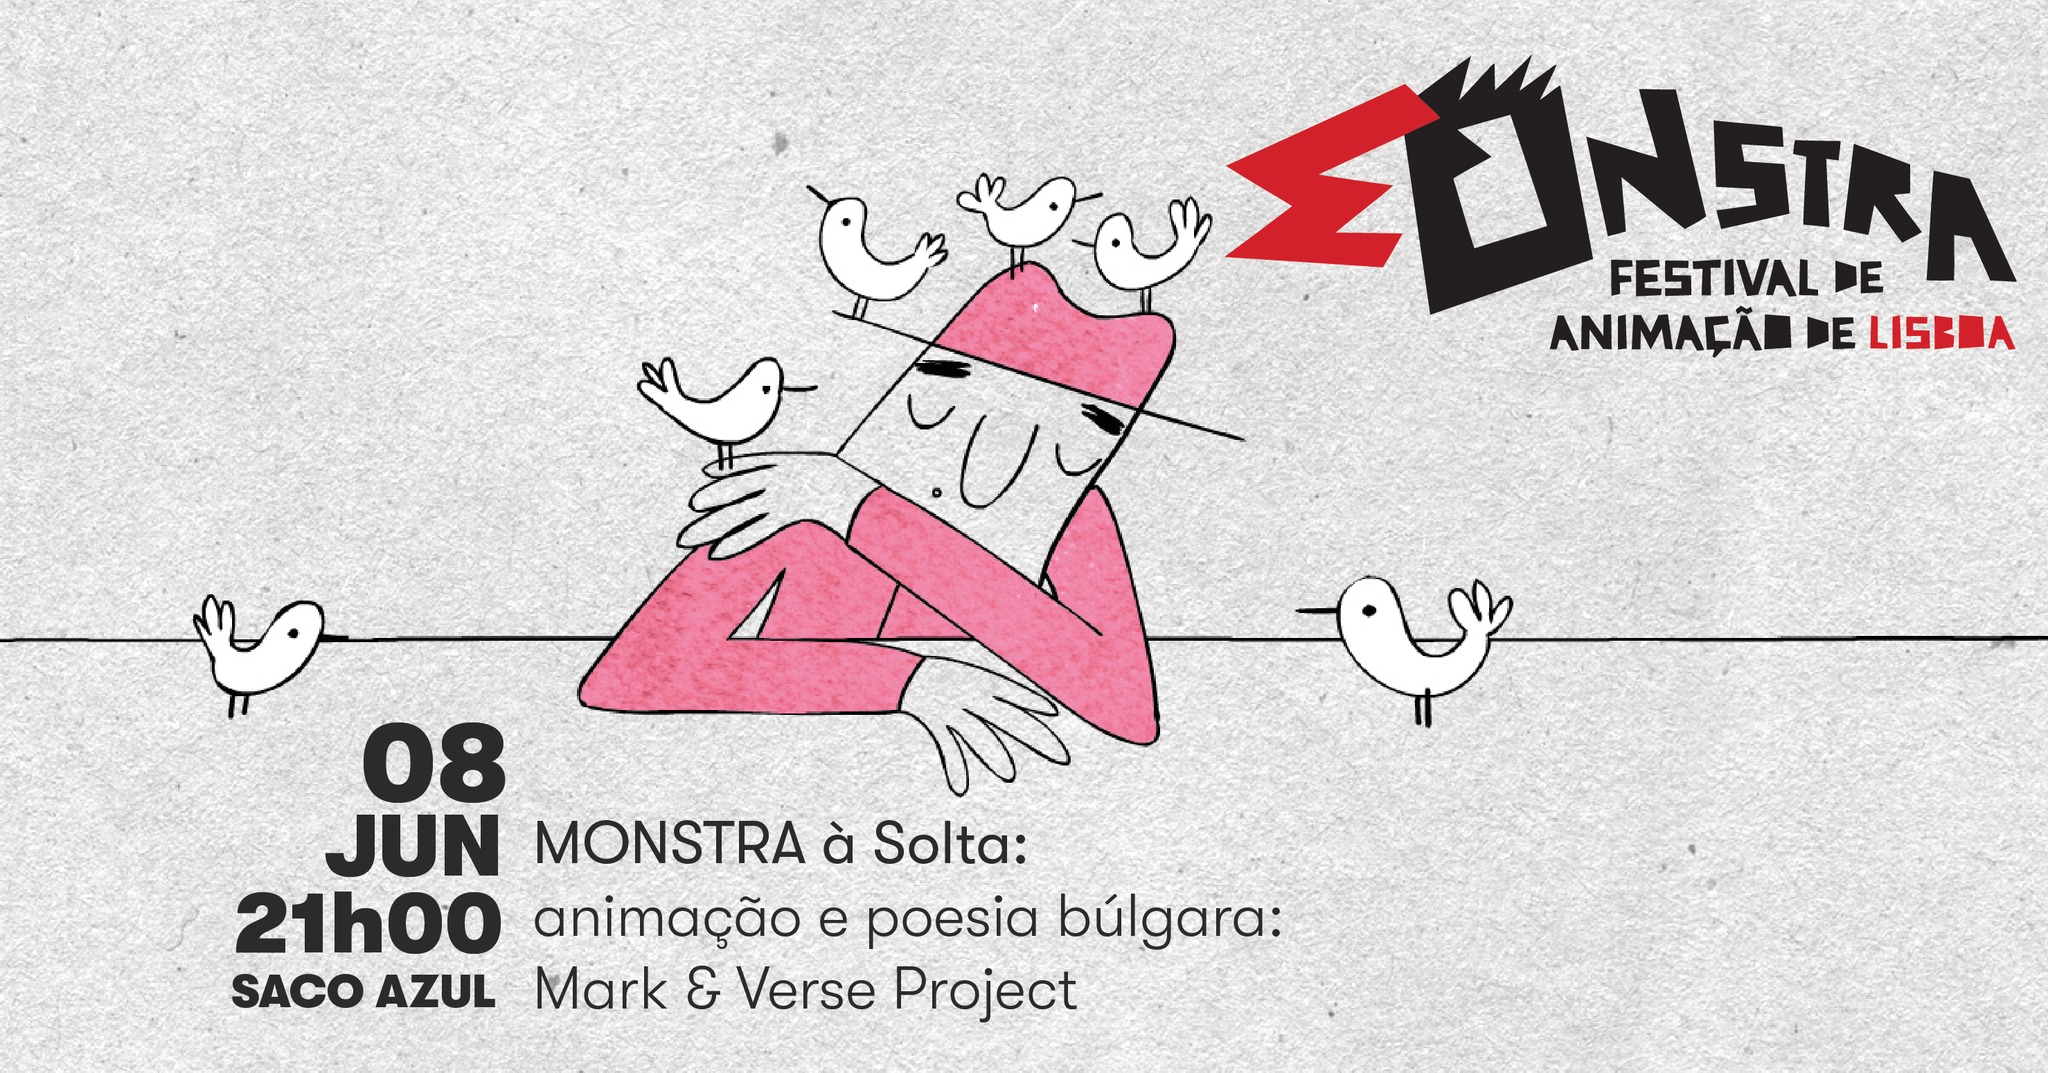 Cinema à mesa: MONSTRA  à solta: animação e poesia búlgara: Mark & Verse Project